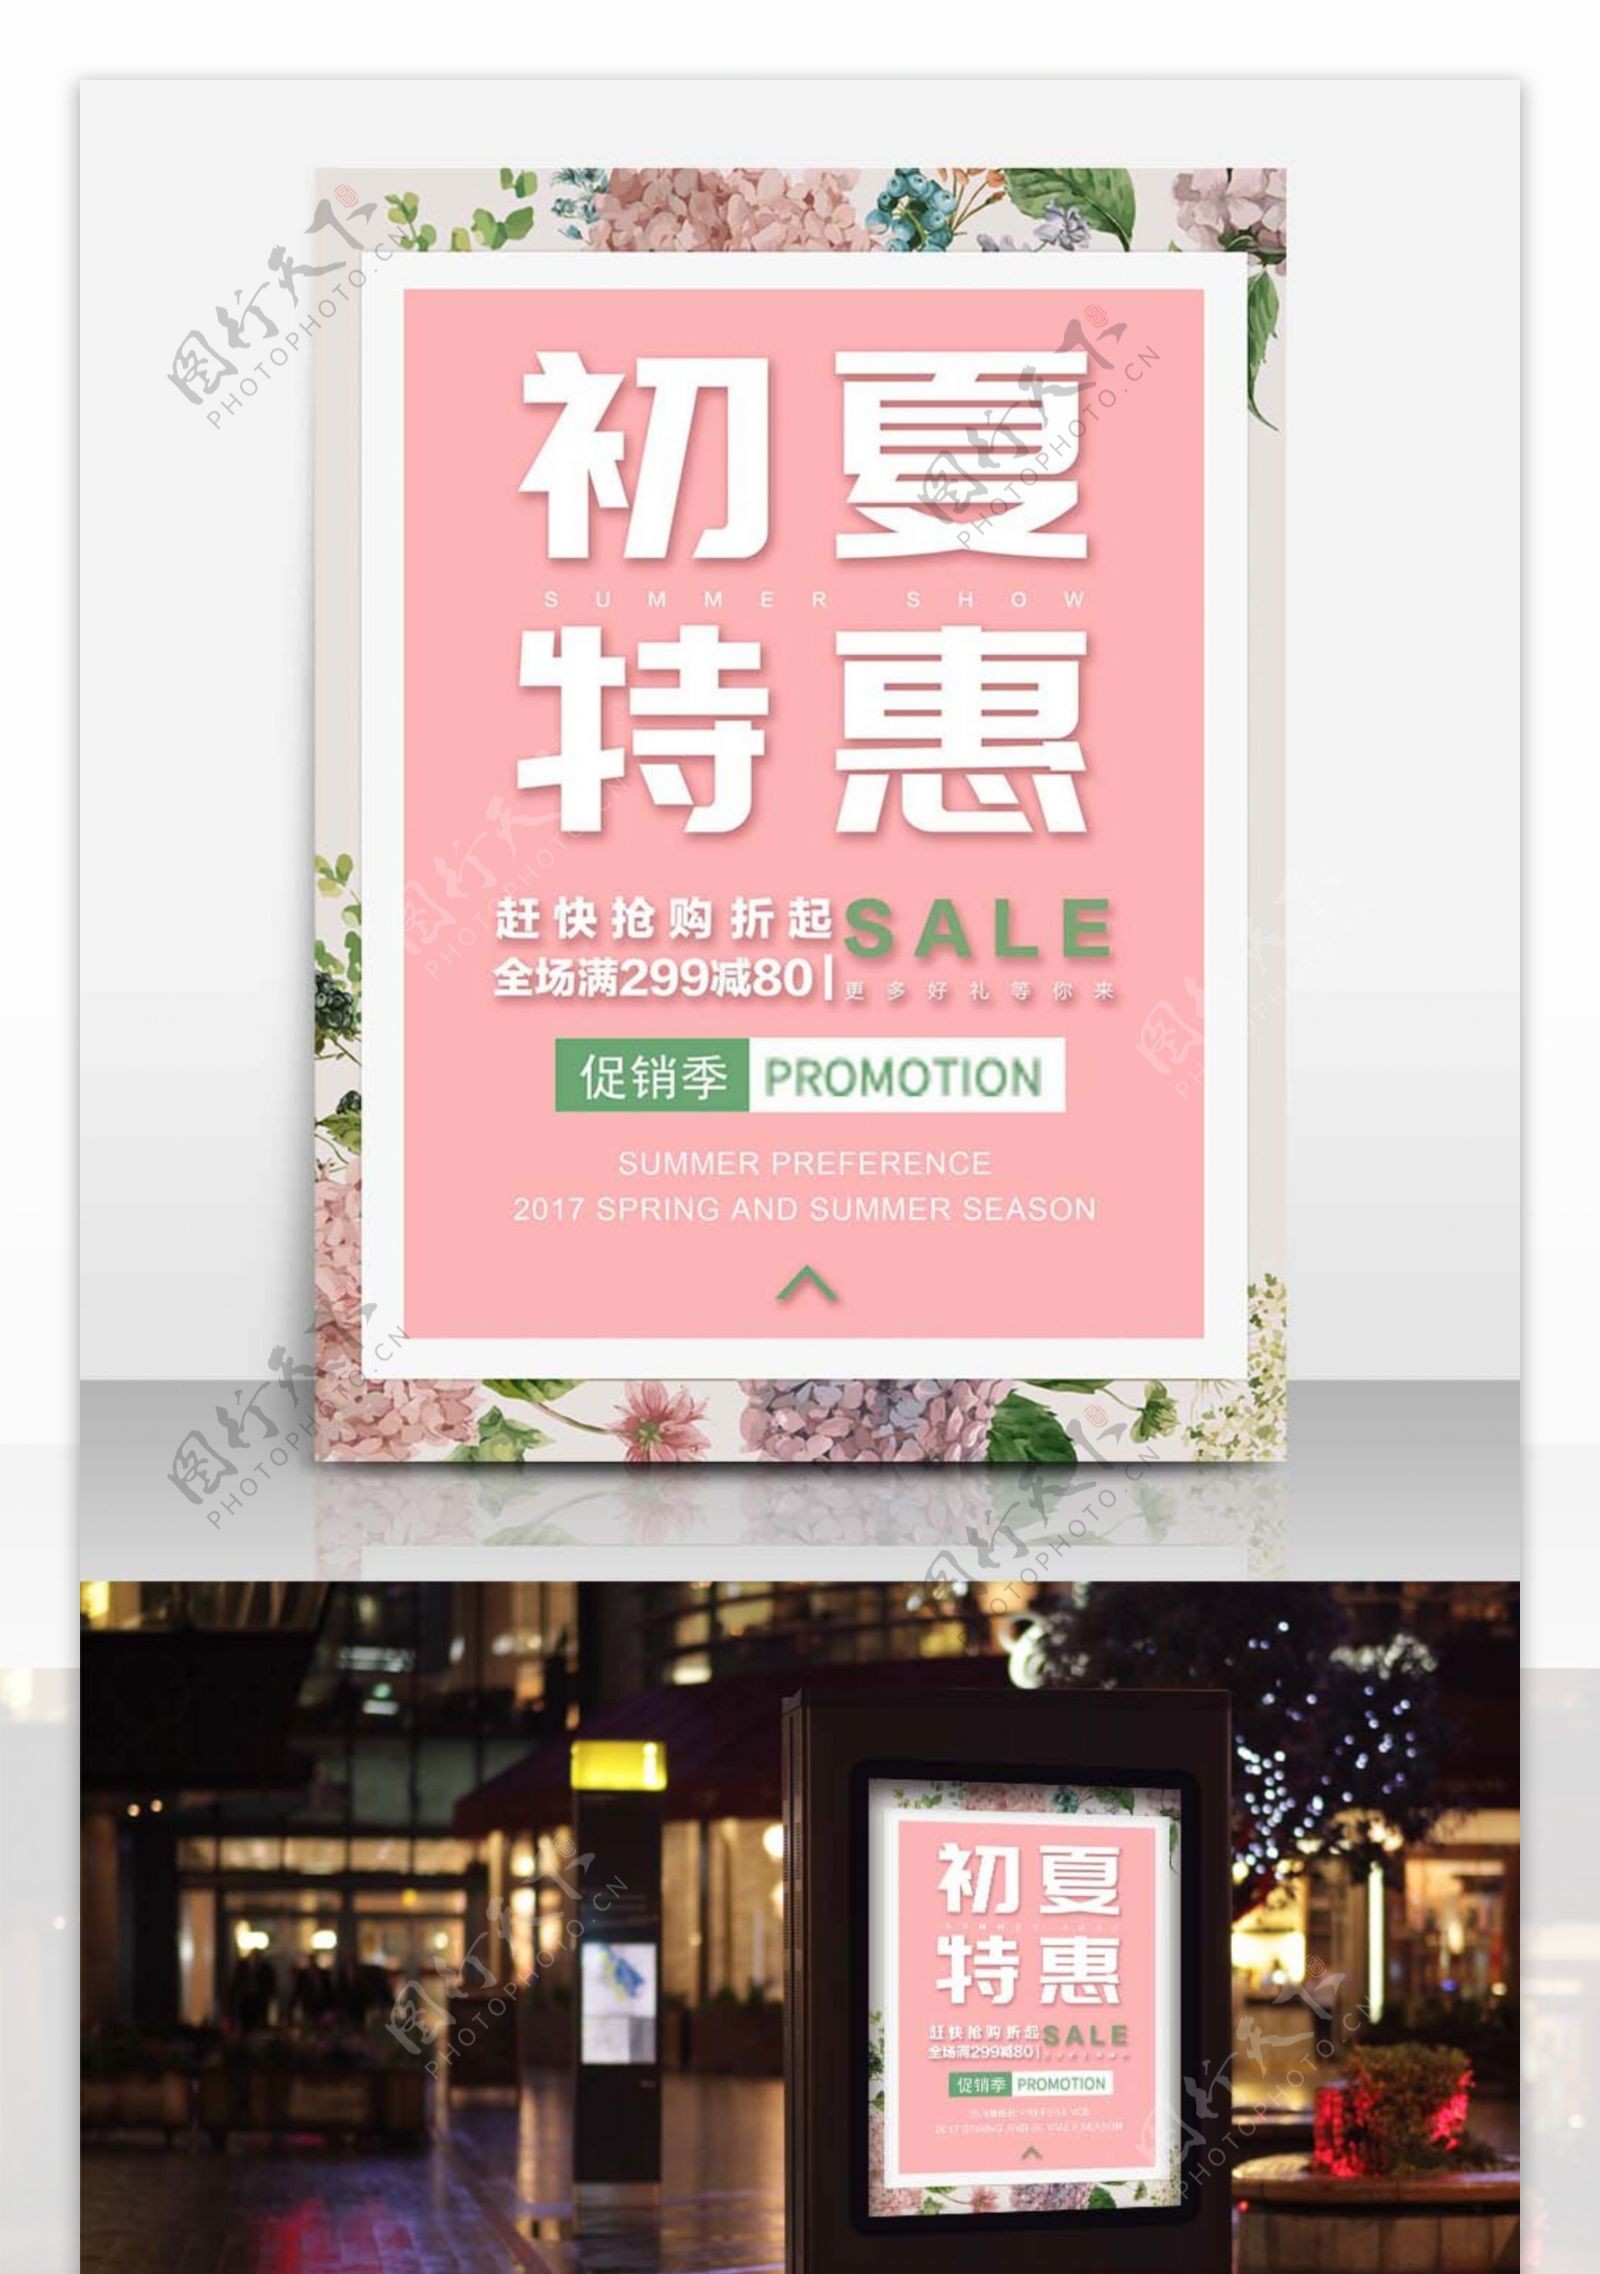 初夏特惠促销粉红简约商业设计海报模板